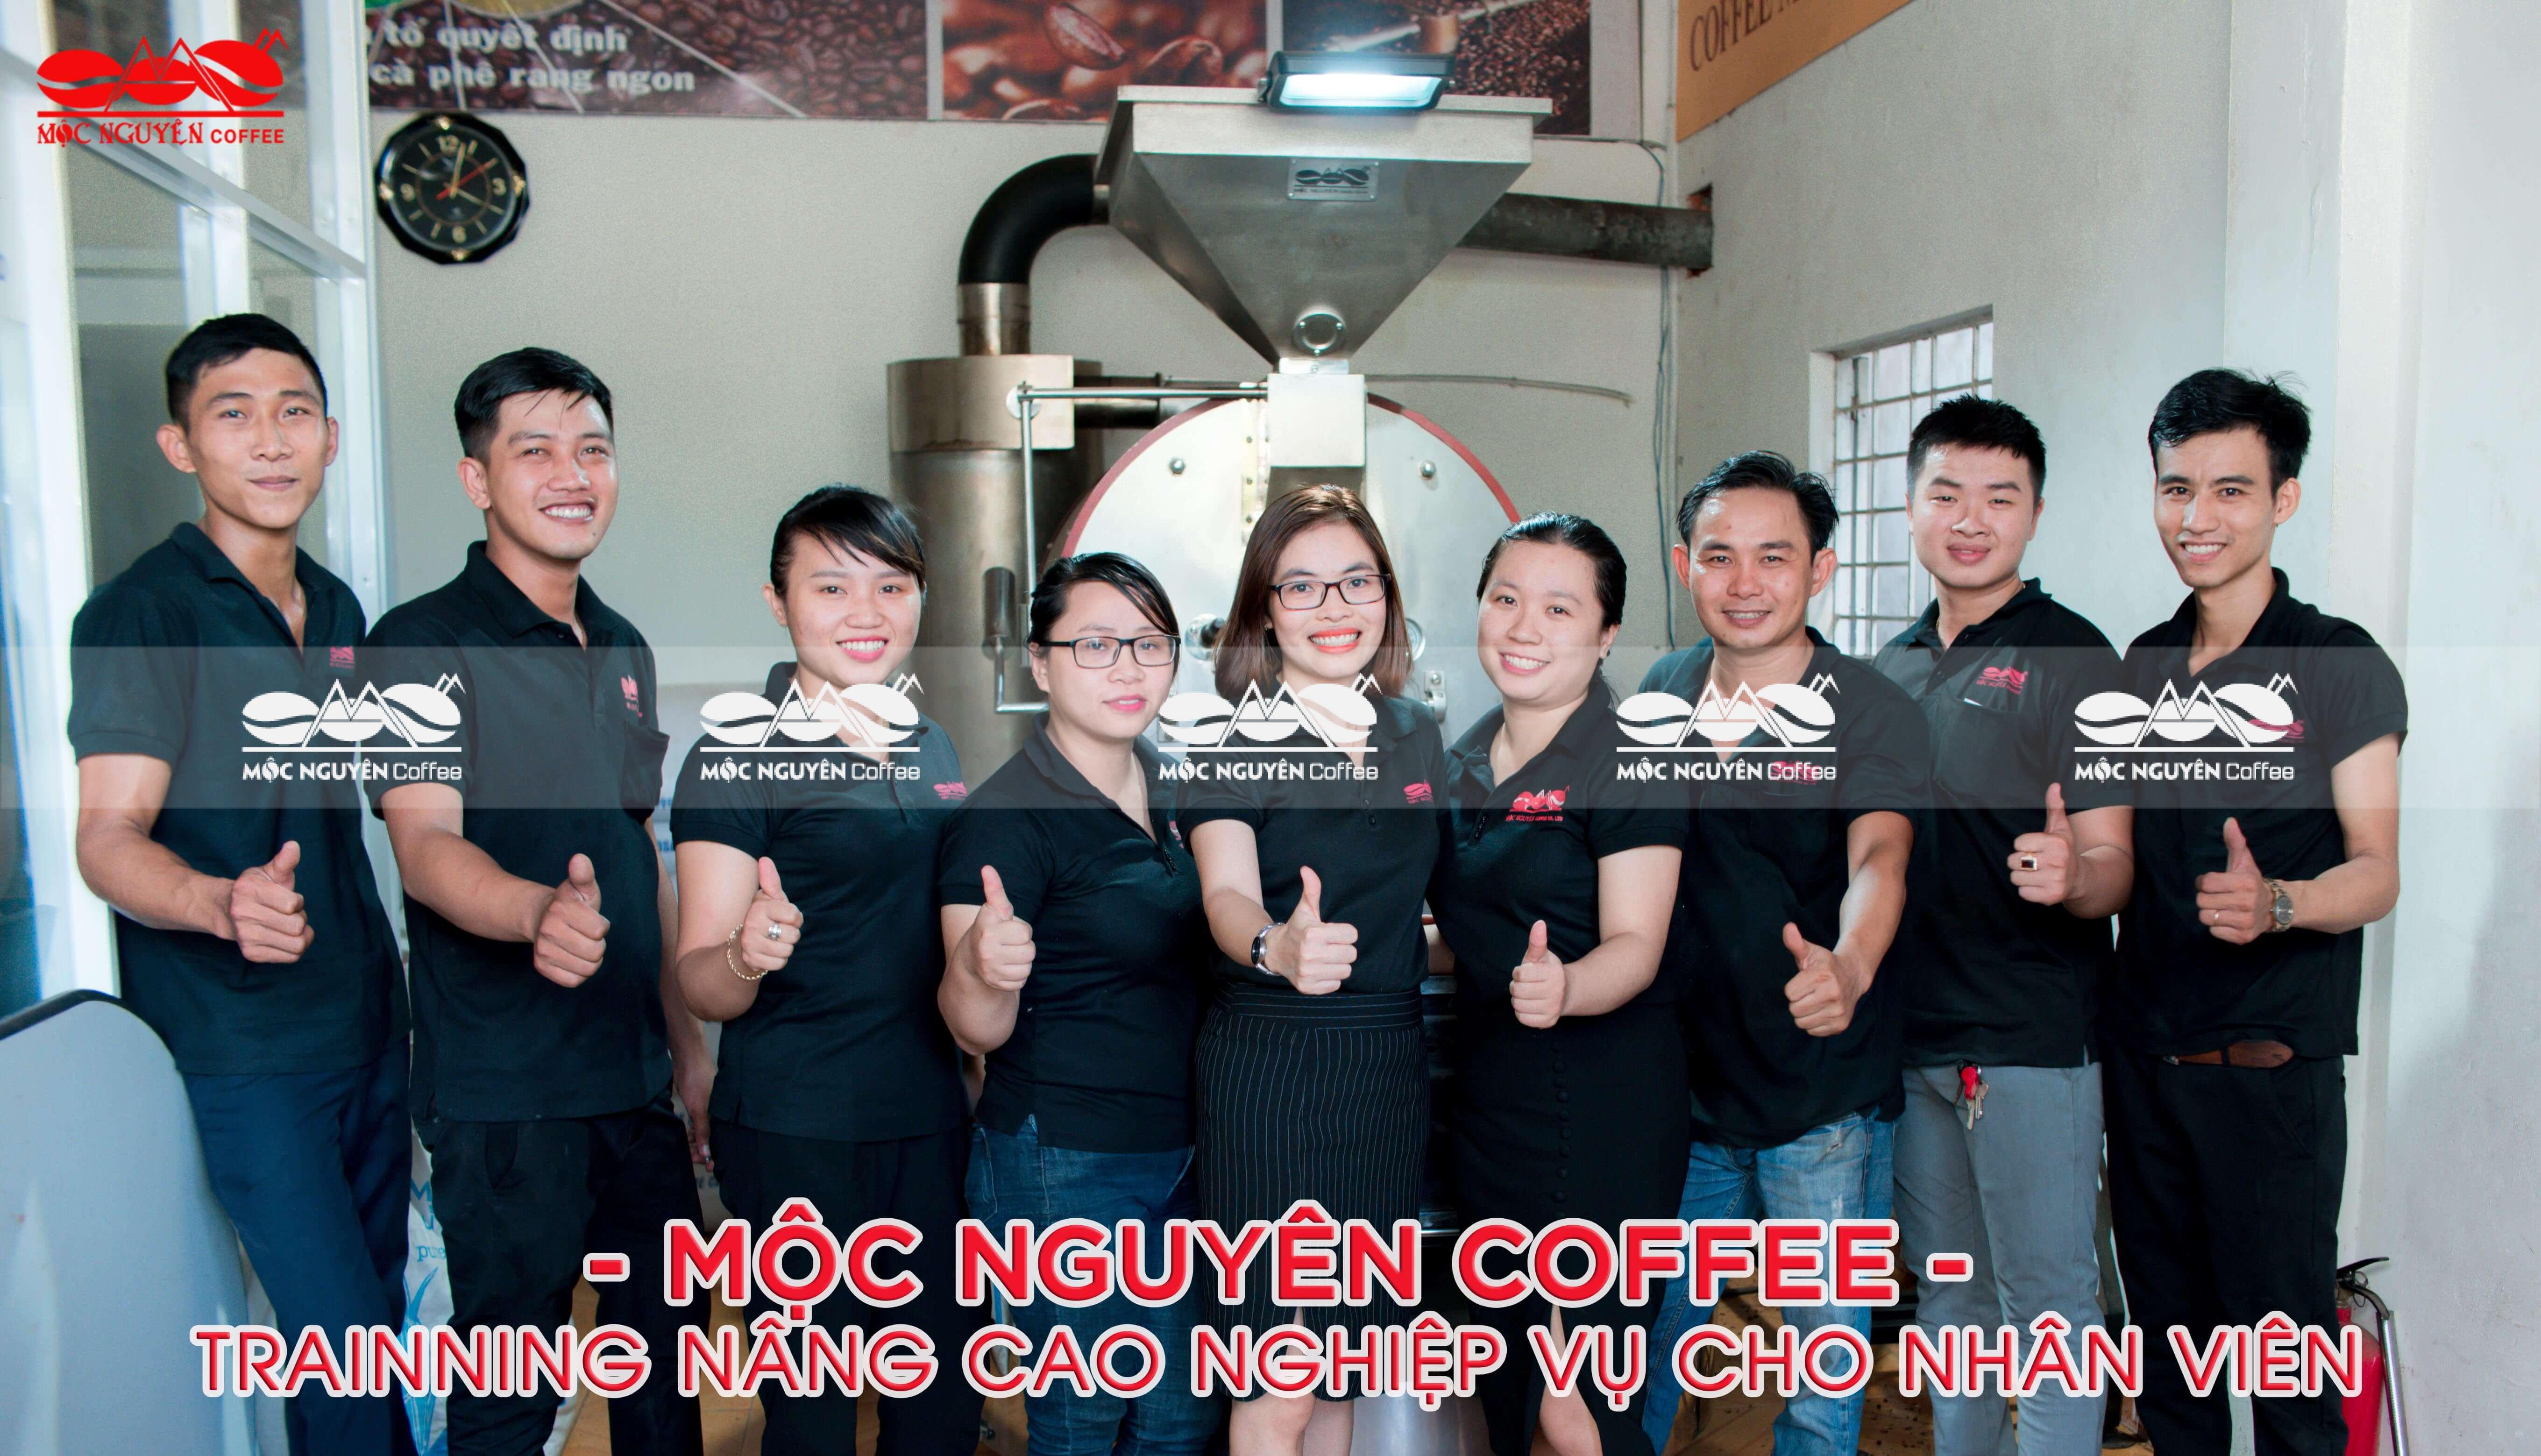 Mộc Nguyên Coffee trainning nâng cao nghiệp vụ cho nhân viên